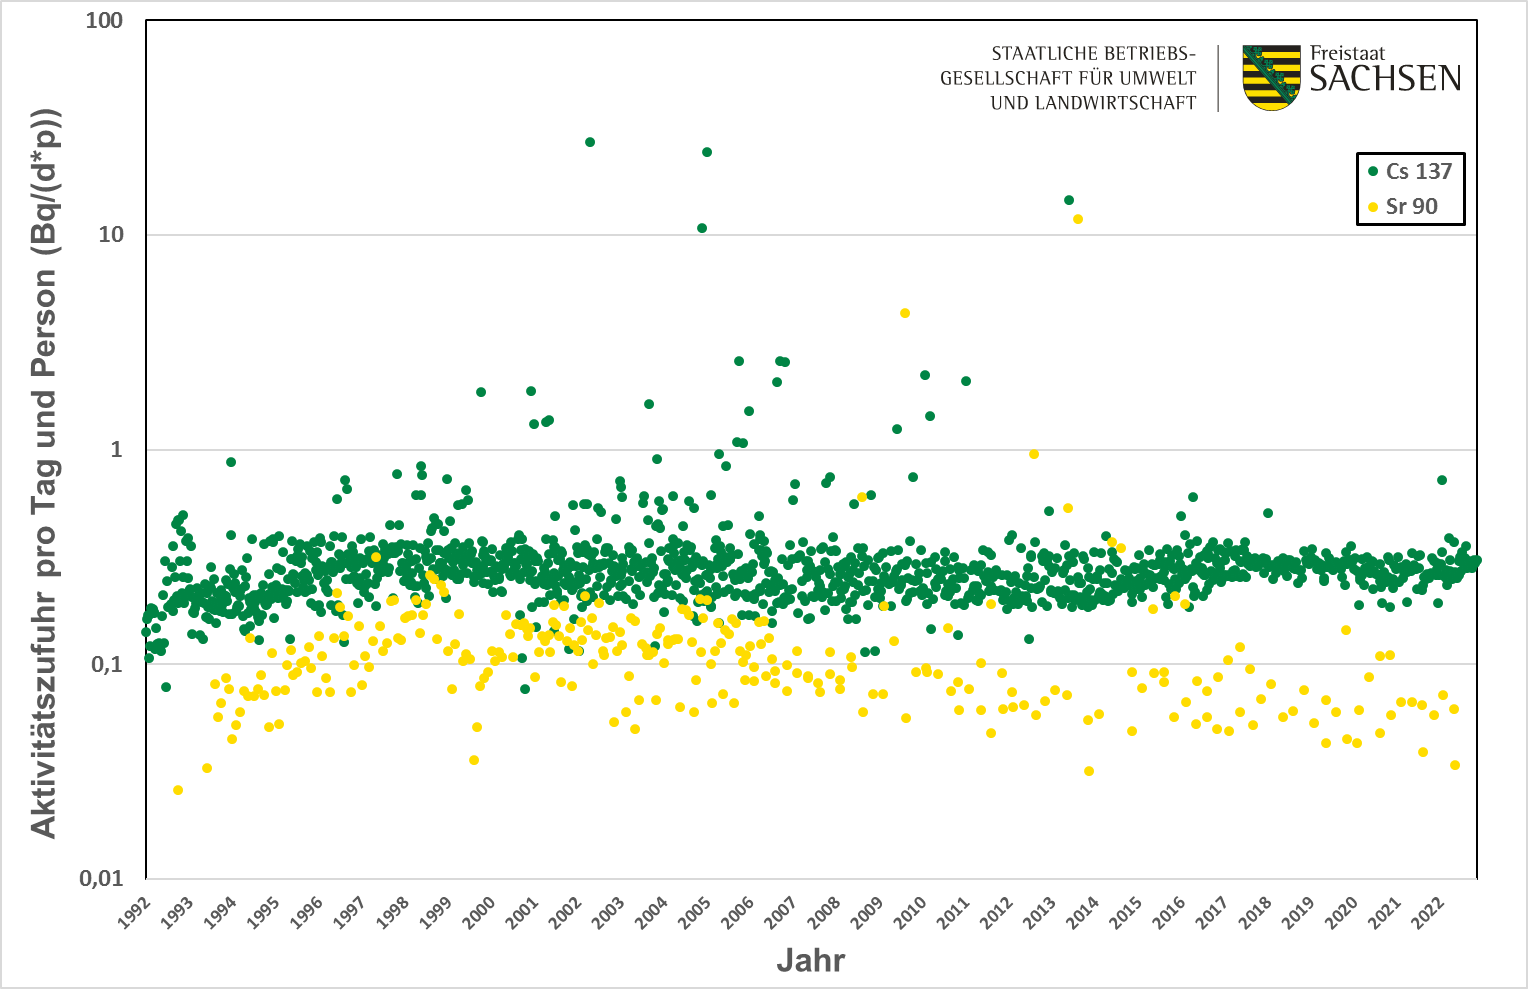 Die Grafik zeigt die im Labor bestimmte Aktivitätskonzentration pro Tag und Person in Bequarel pro Tag und Person in den nahrungsmitteln eines Tages. Die Werte für Cäsium 137 und Strontium 90 sind seit 1996 stabil und variieren zwischen 0,1 und 0,5